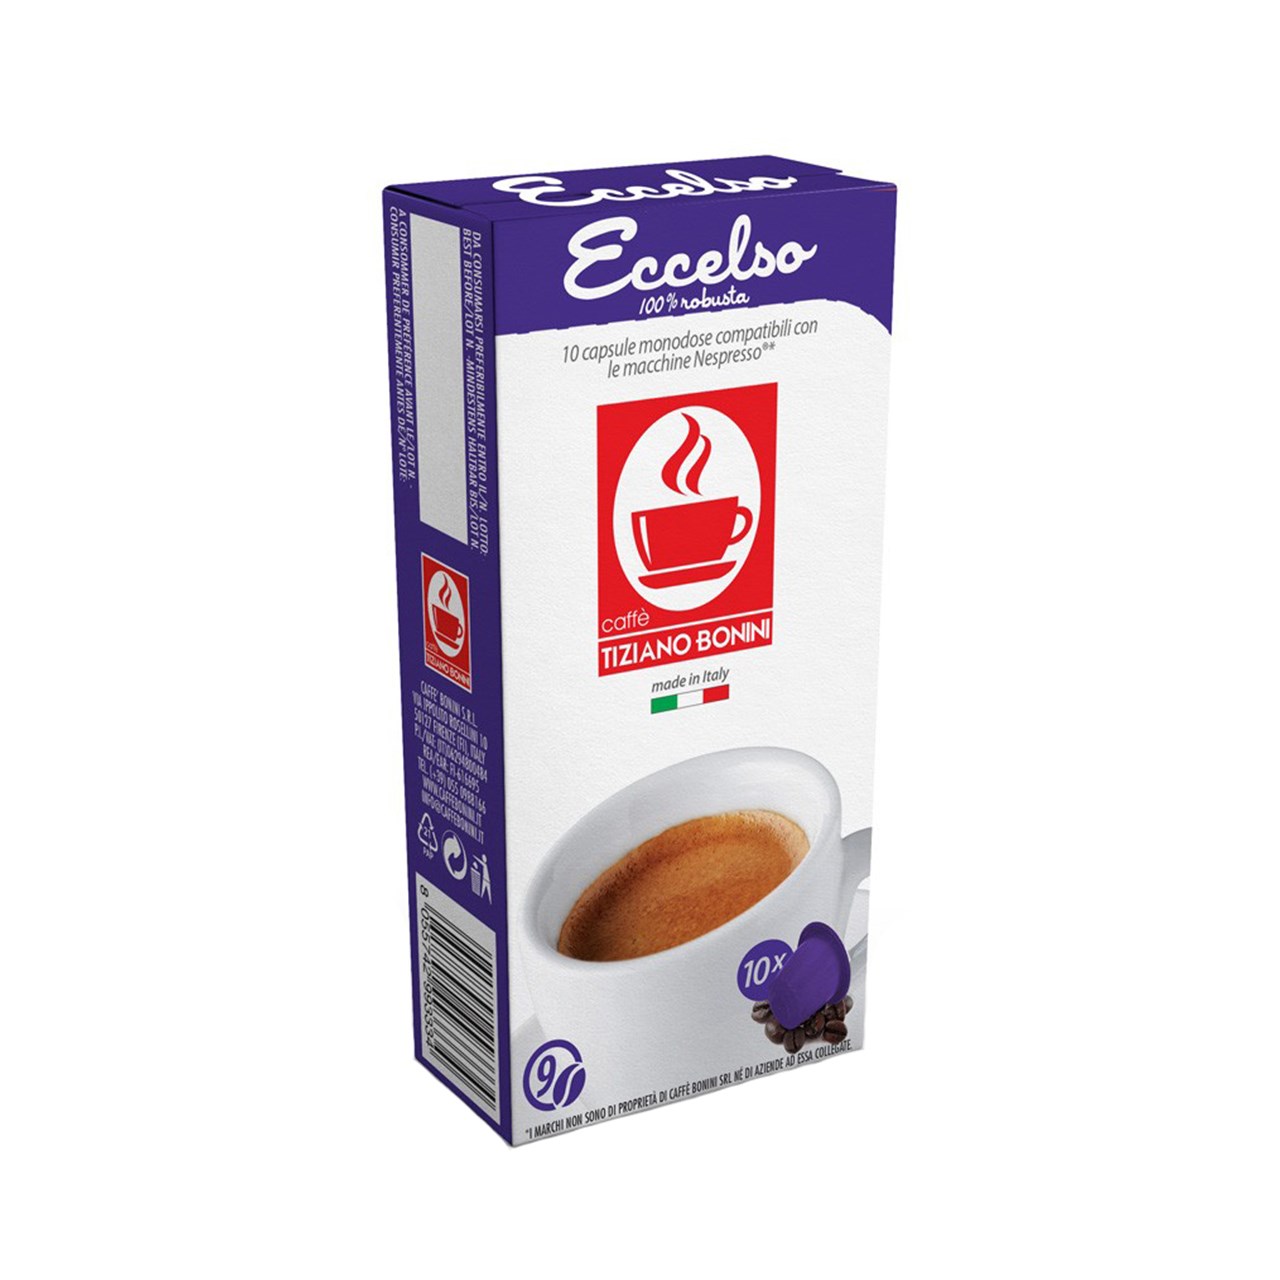 کپسول قهوه تیزیانو بونینی مدل Eccelso